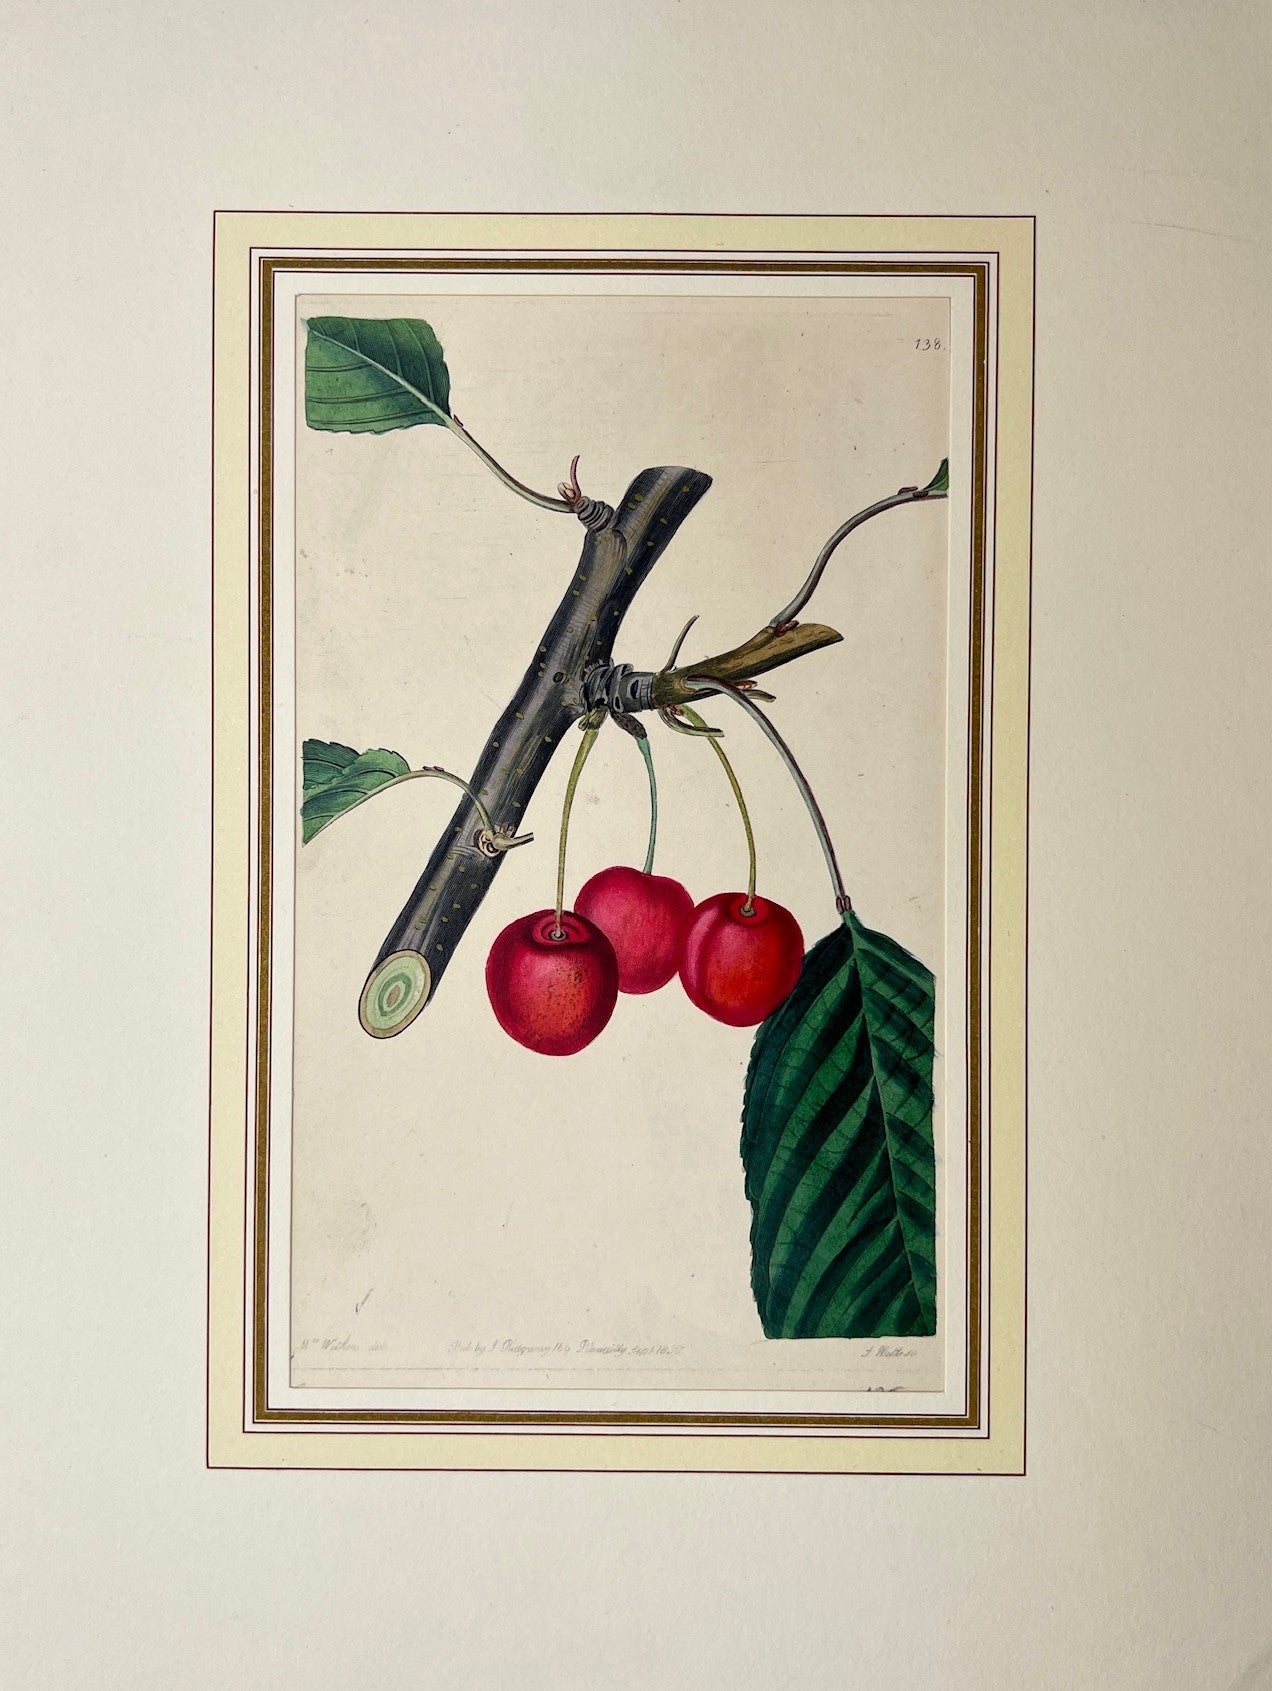 Antique Botanical Print - Edwards's Botanical Register - Cherry Tree - Ridgway